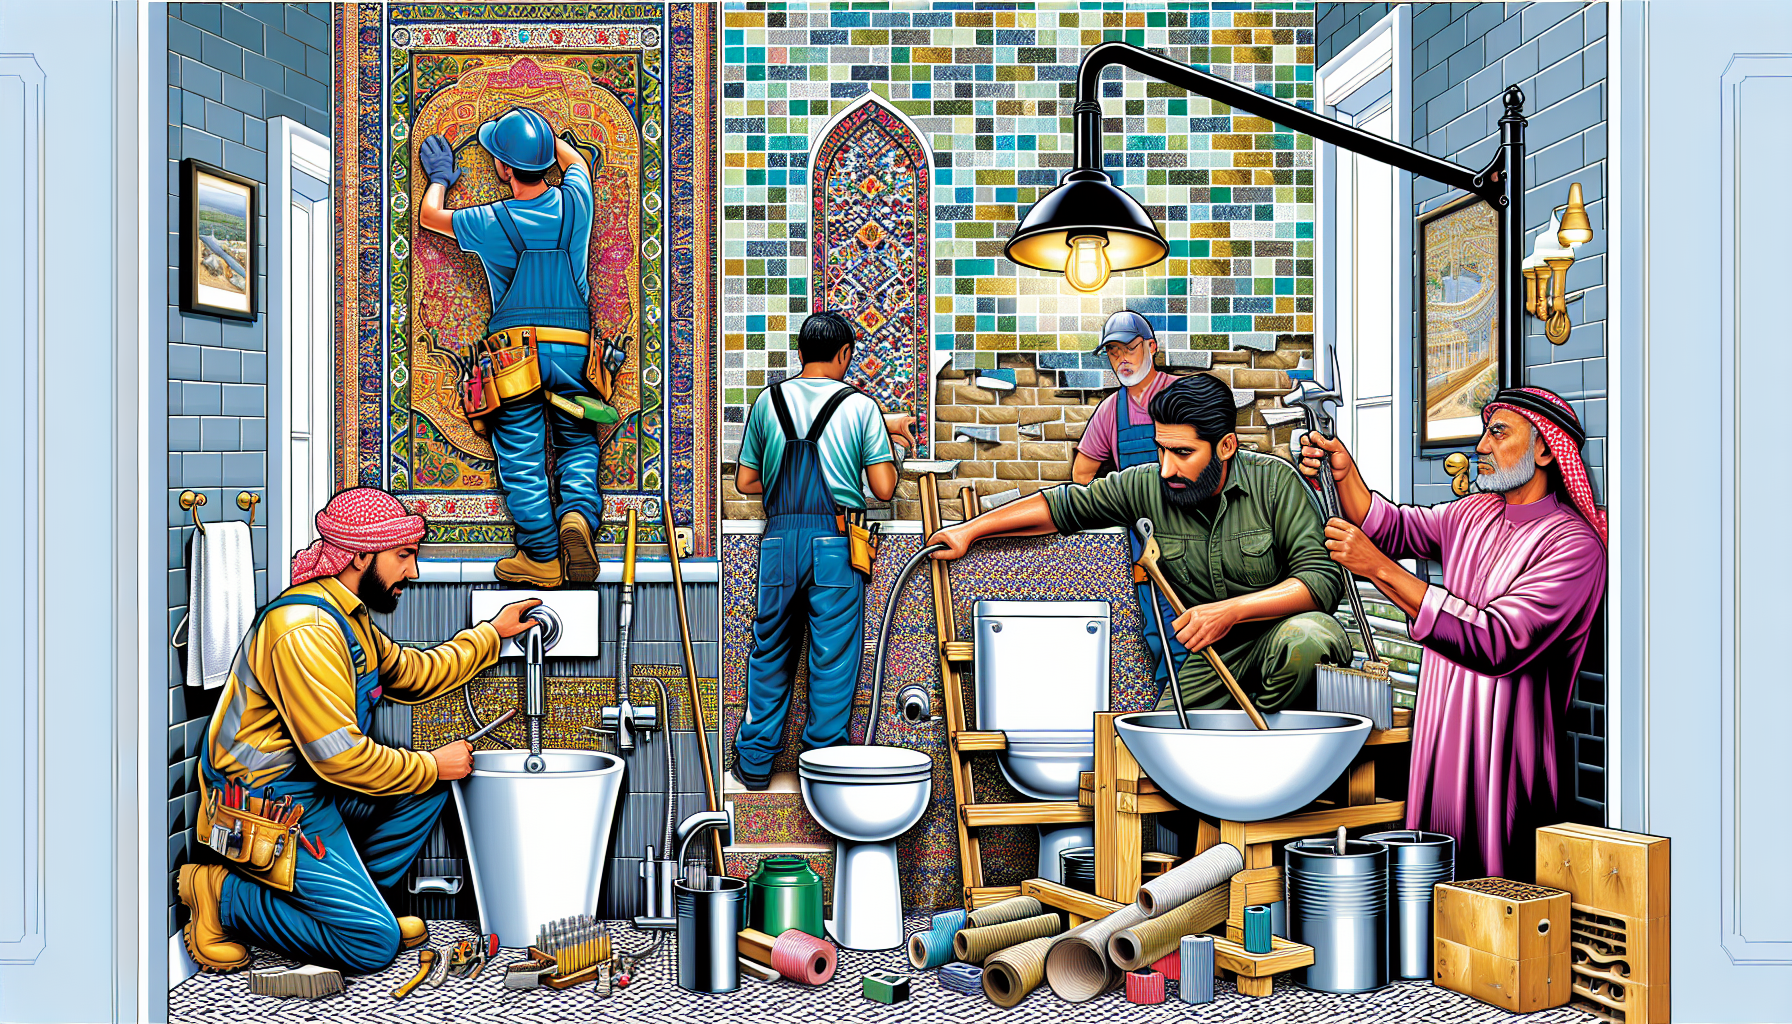 Badsanierung: Zuständigkeiten und Gewerke - Illustration von verschiedenen Handwerkern, die an einer Badsanierung beteiligt sind